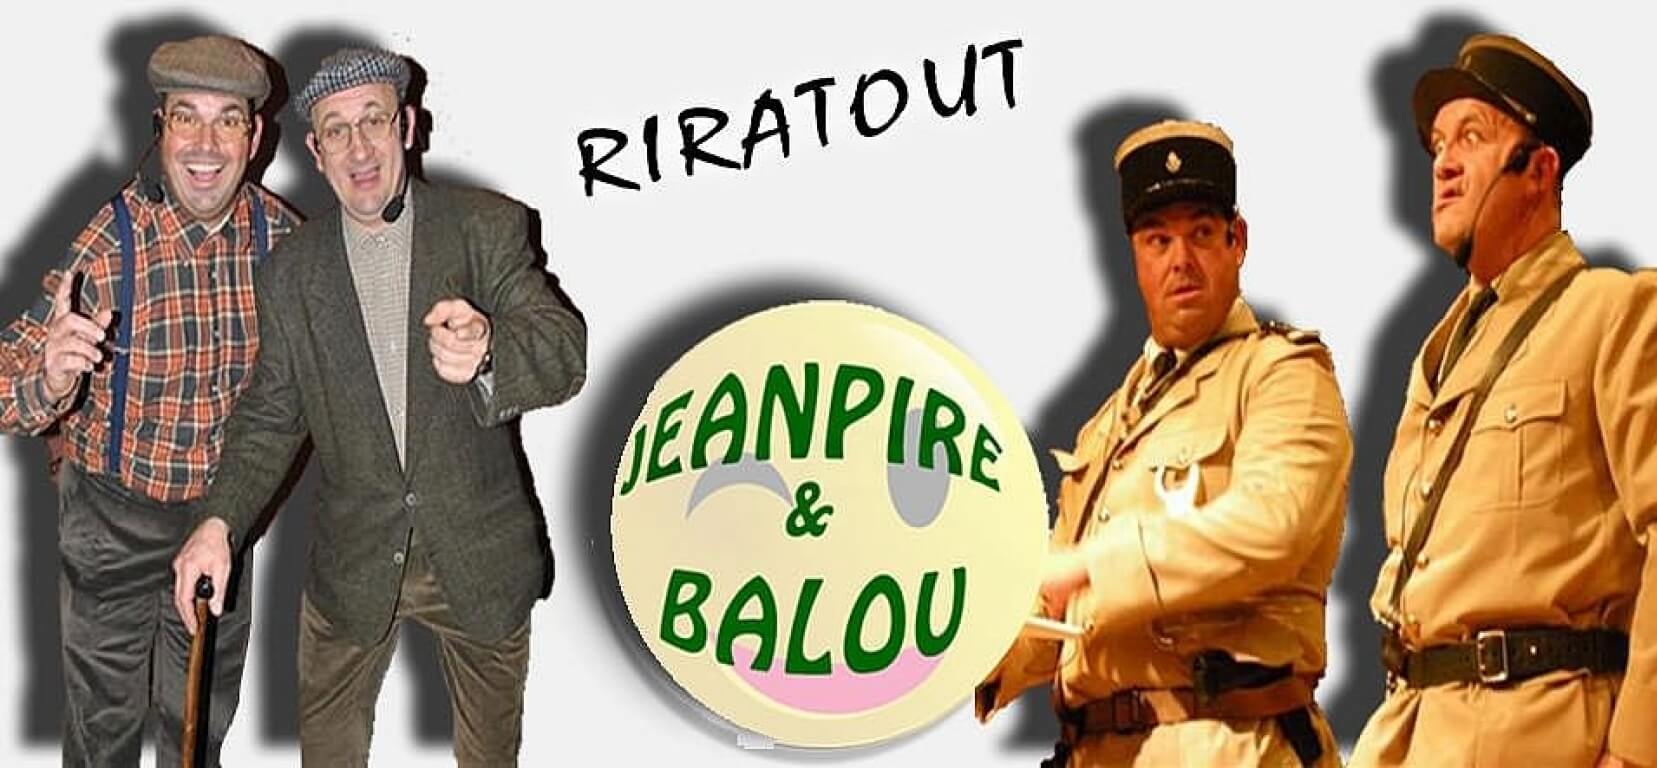 Jarret de Porc avec Jean-Pire et Balou - AMICALE BEAUSOLEIL